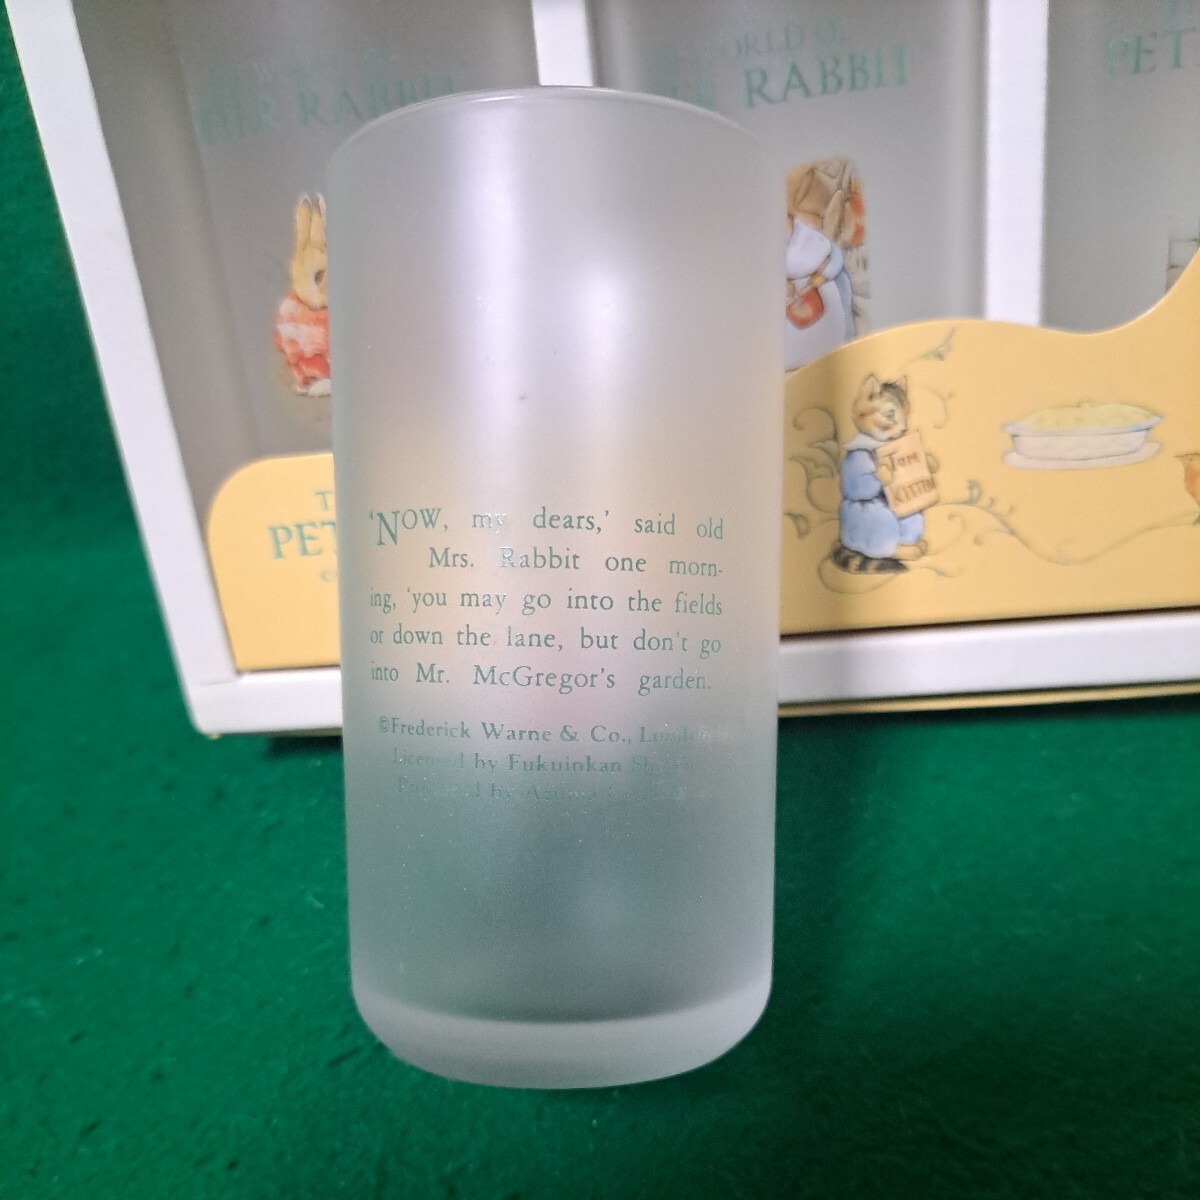  быстрое решение бесплатная доставка не использовался товар Peter Rabbit высокий стакан комплект 5 шт стакан стакан azuma